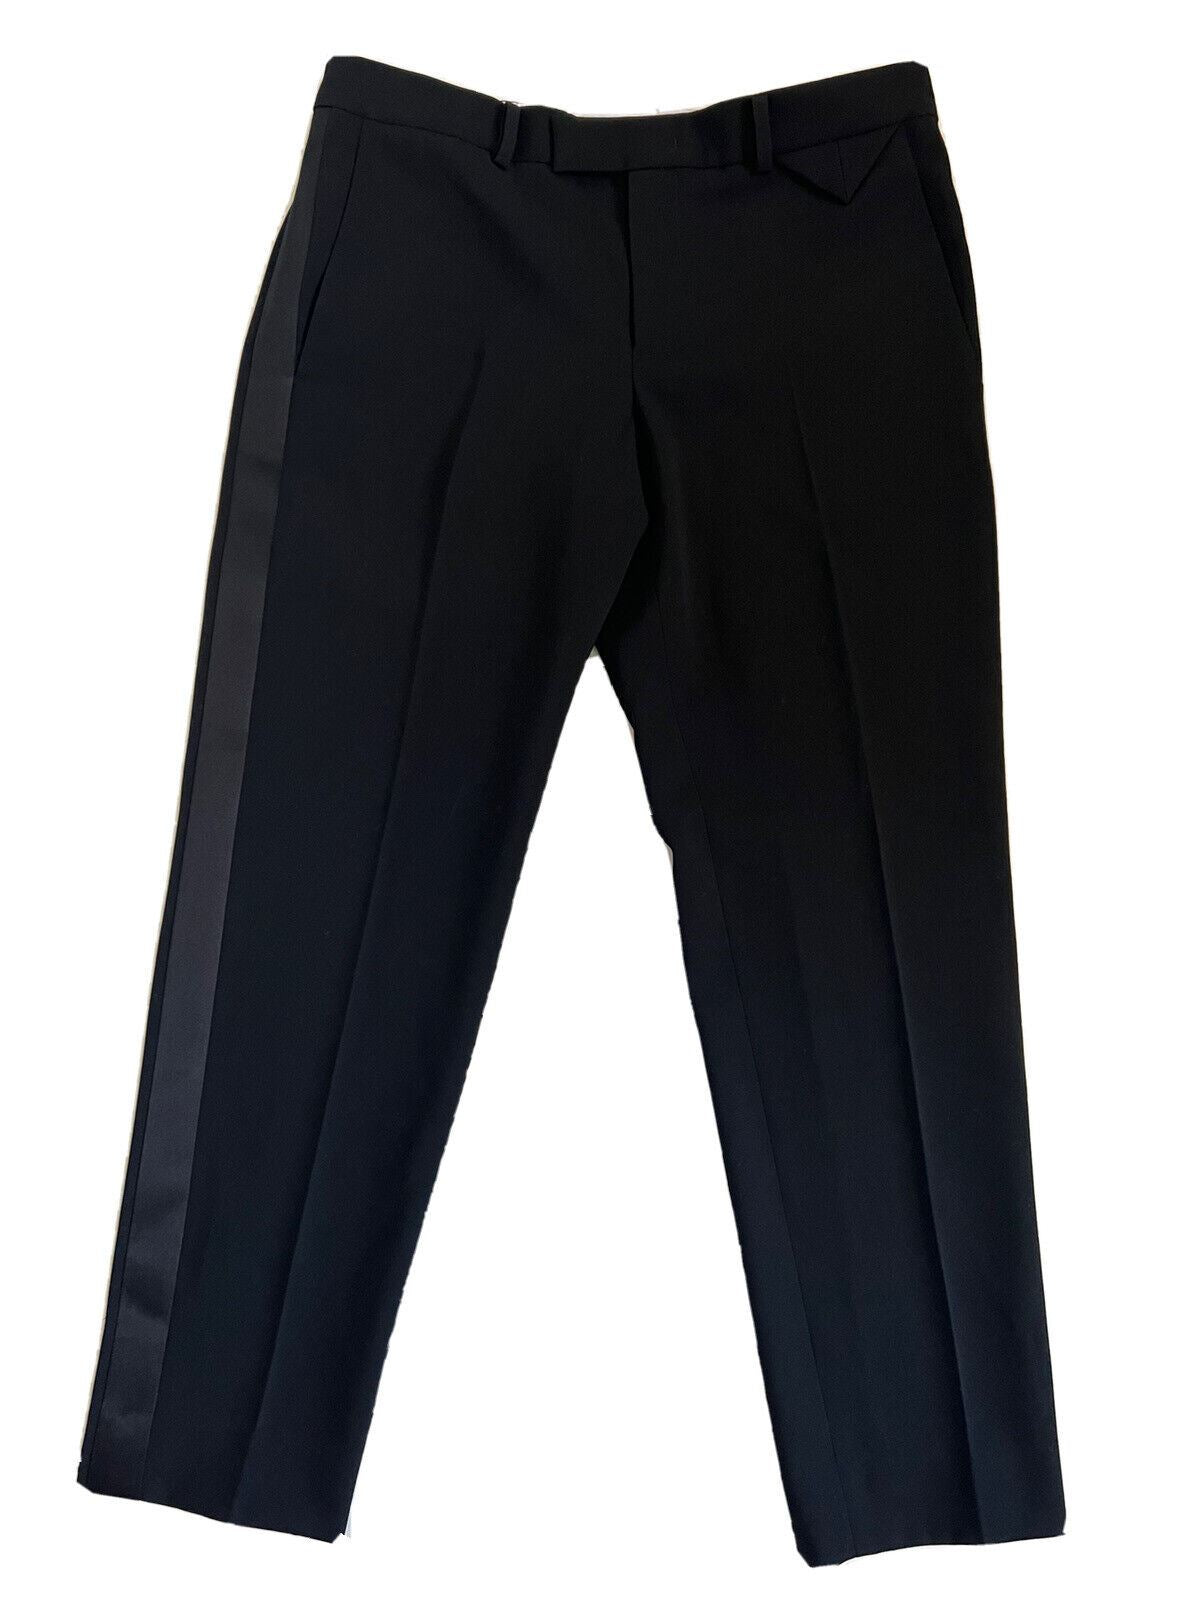 СЗТ 1650 долларов США Bottega Veneta Женские шерстяные брюки-смокинг, черные, размер 4, США (40 евро) 